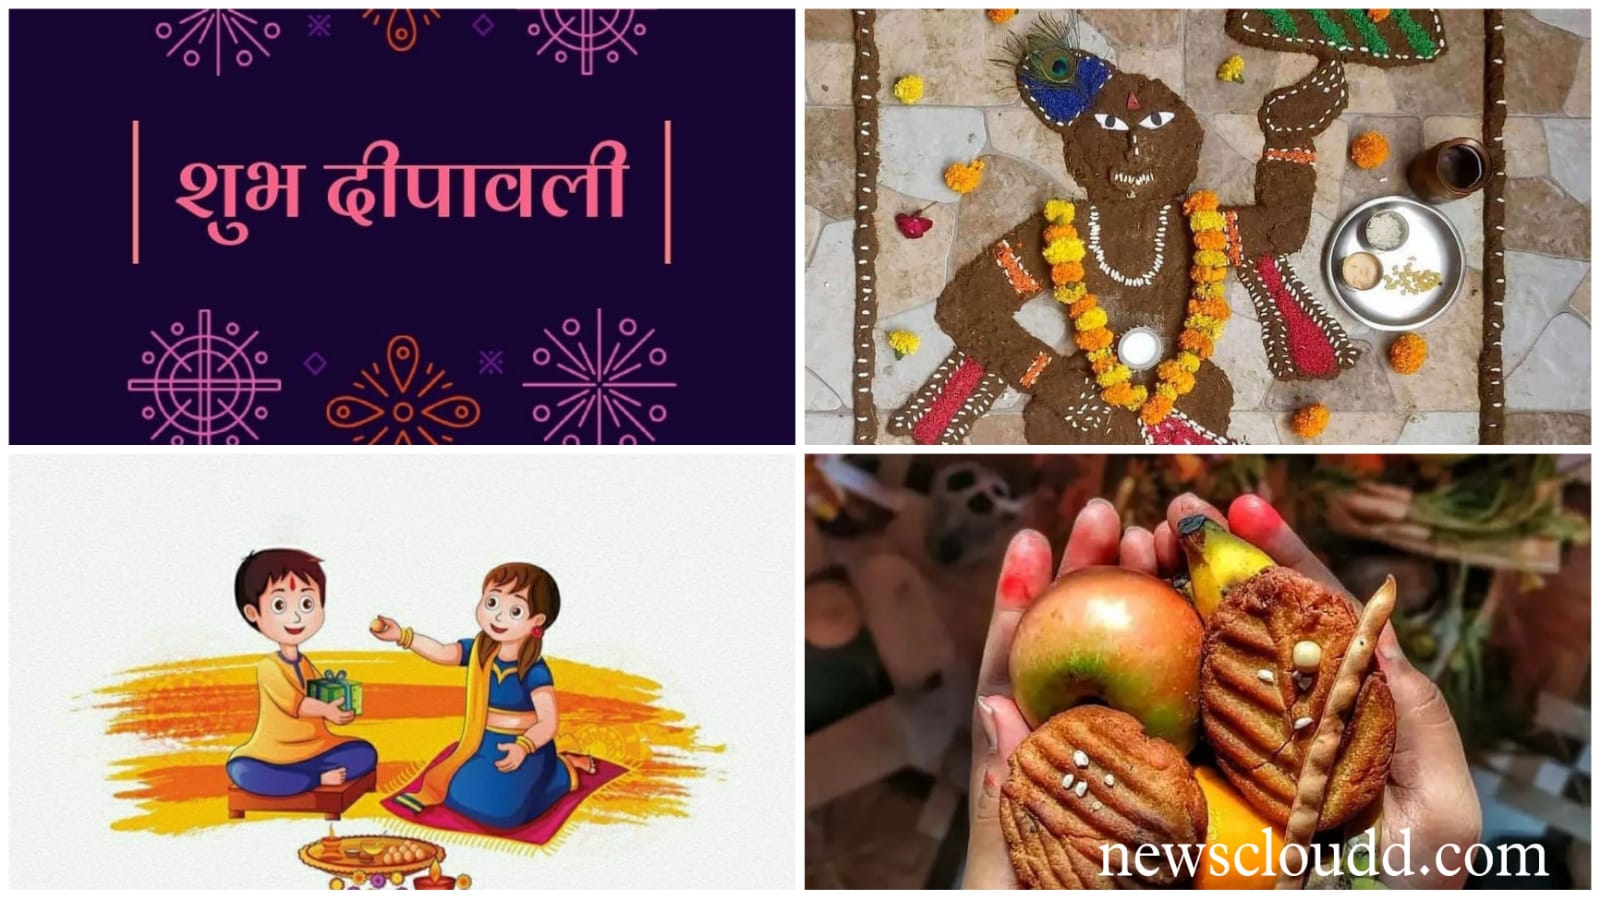 November 2021 Vrat & Festival List: दीपावली से लेकर छठ पूजा तक, नवंबर में पड़ रहे हैं ये व्रत-त्योहार, देखें पूरी लिस्ट